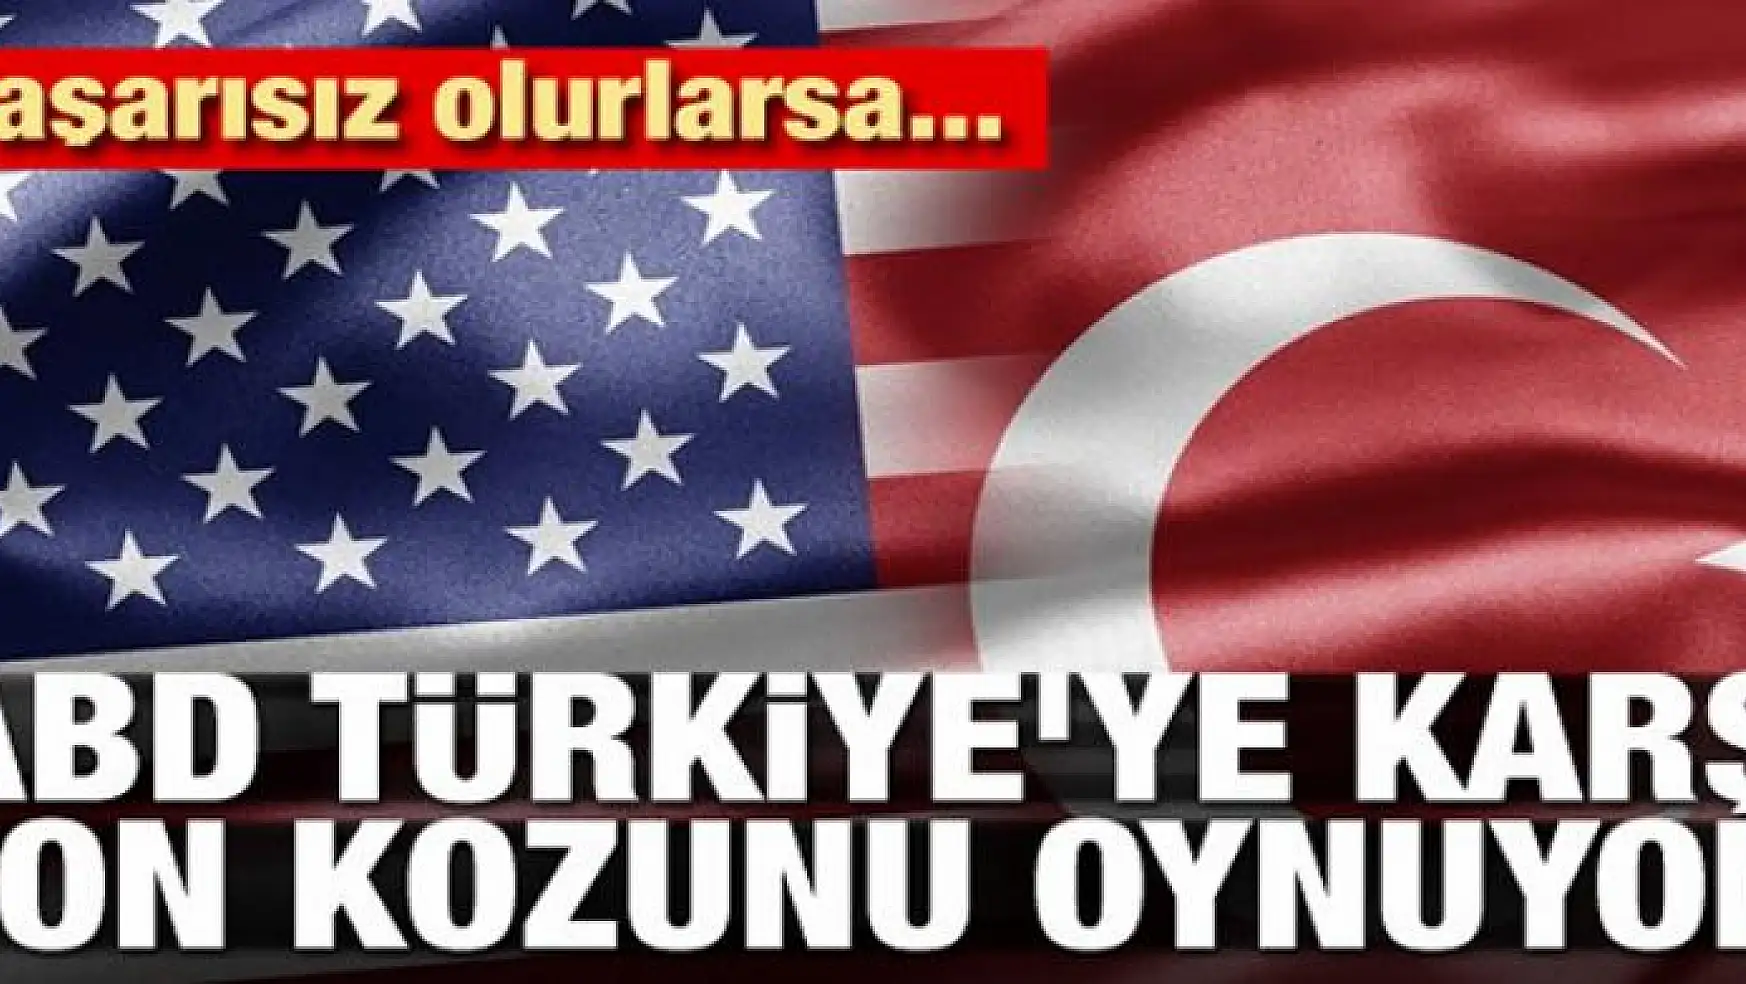 ABD Türkiye'ye karşı son kozunu oynuyor! Başarısız olursa...